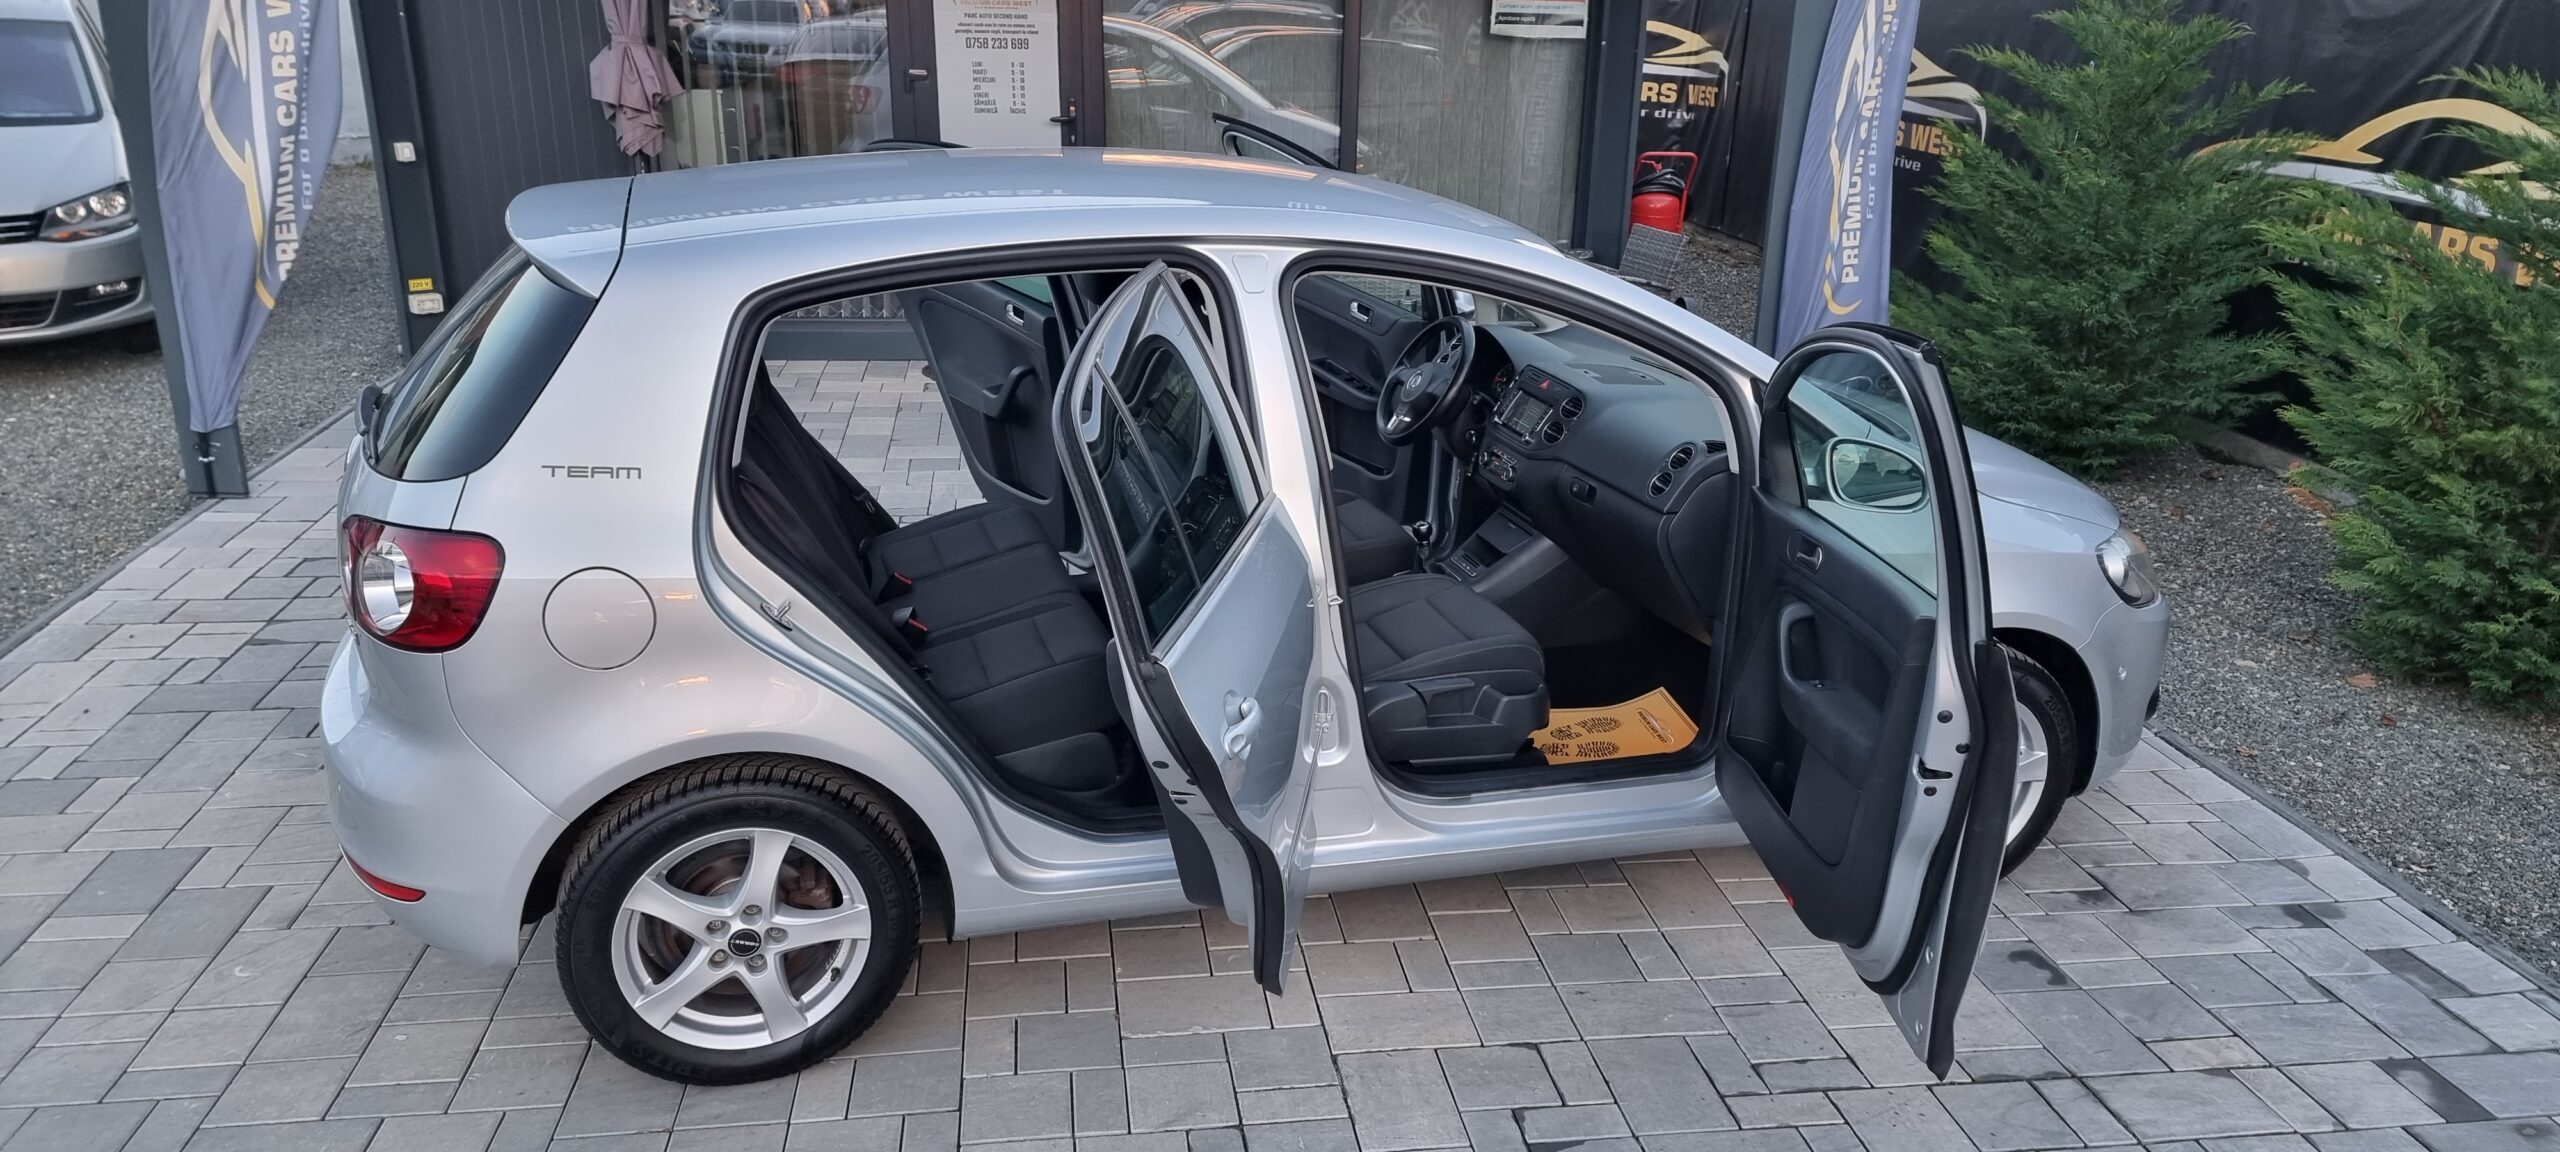 VW Golf 6 PLUS – 1.4 Benzina  122 CP Euro 5